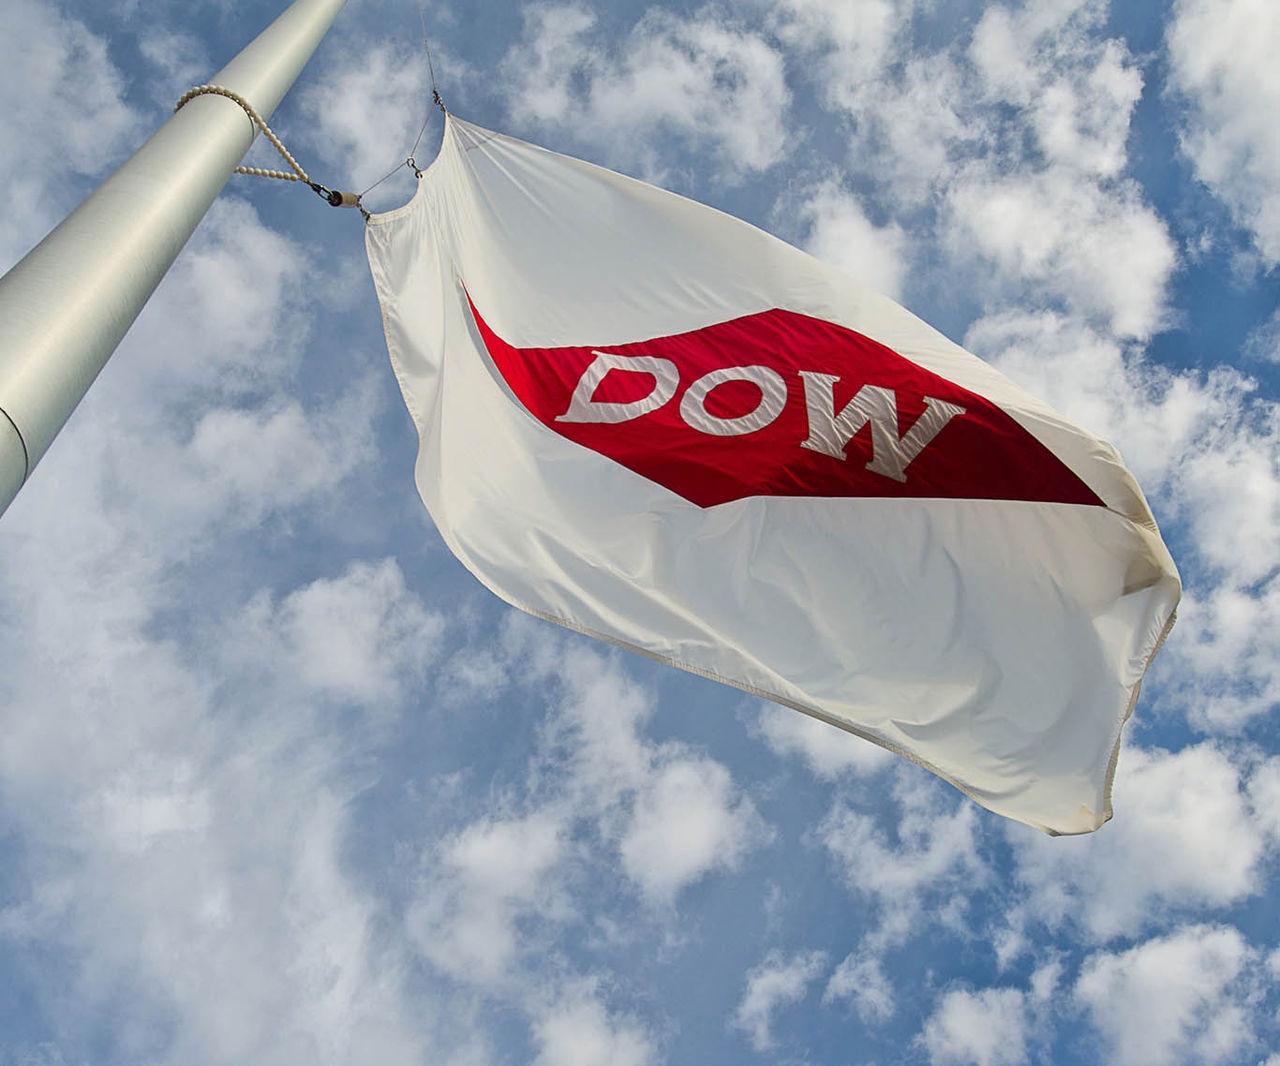 Dow flag image